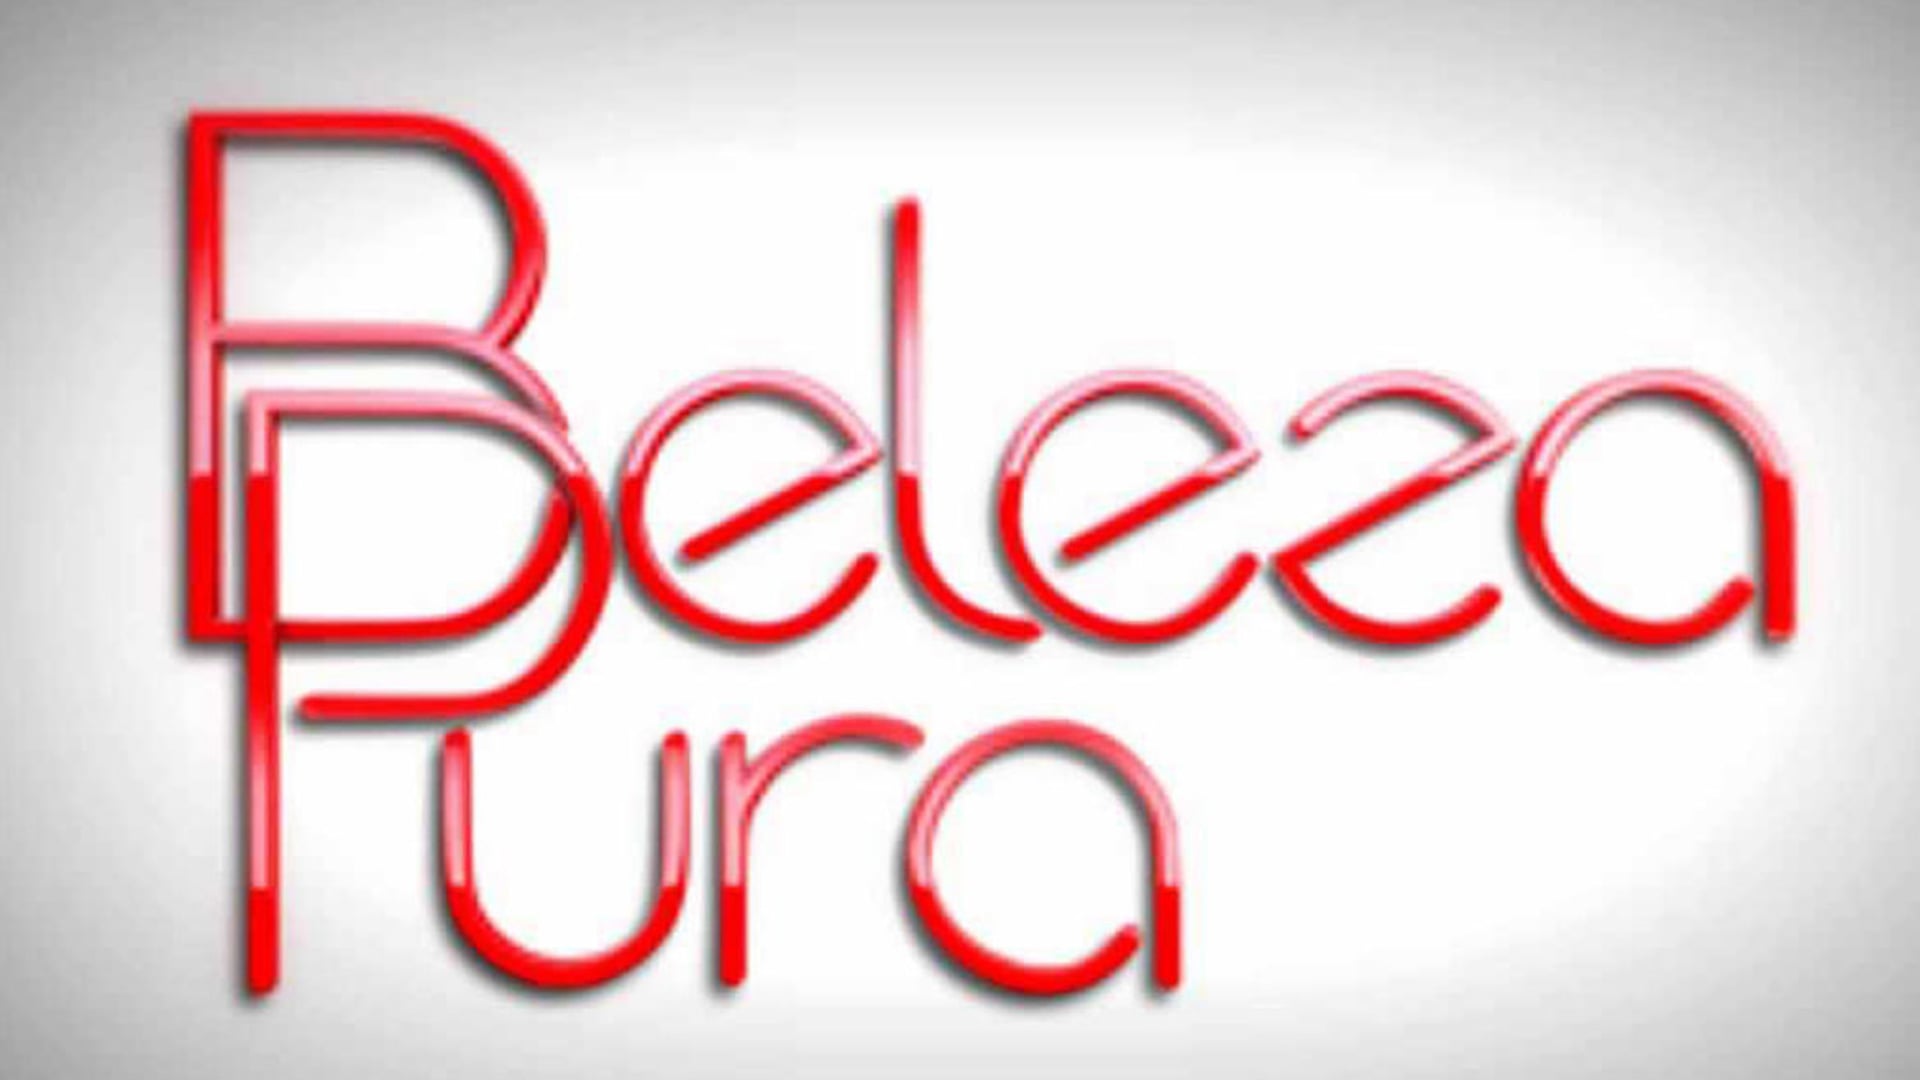 Hilton Castro - novela "Beleza Pura" personagem: Zelador